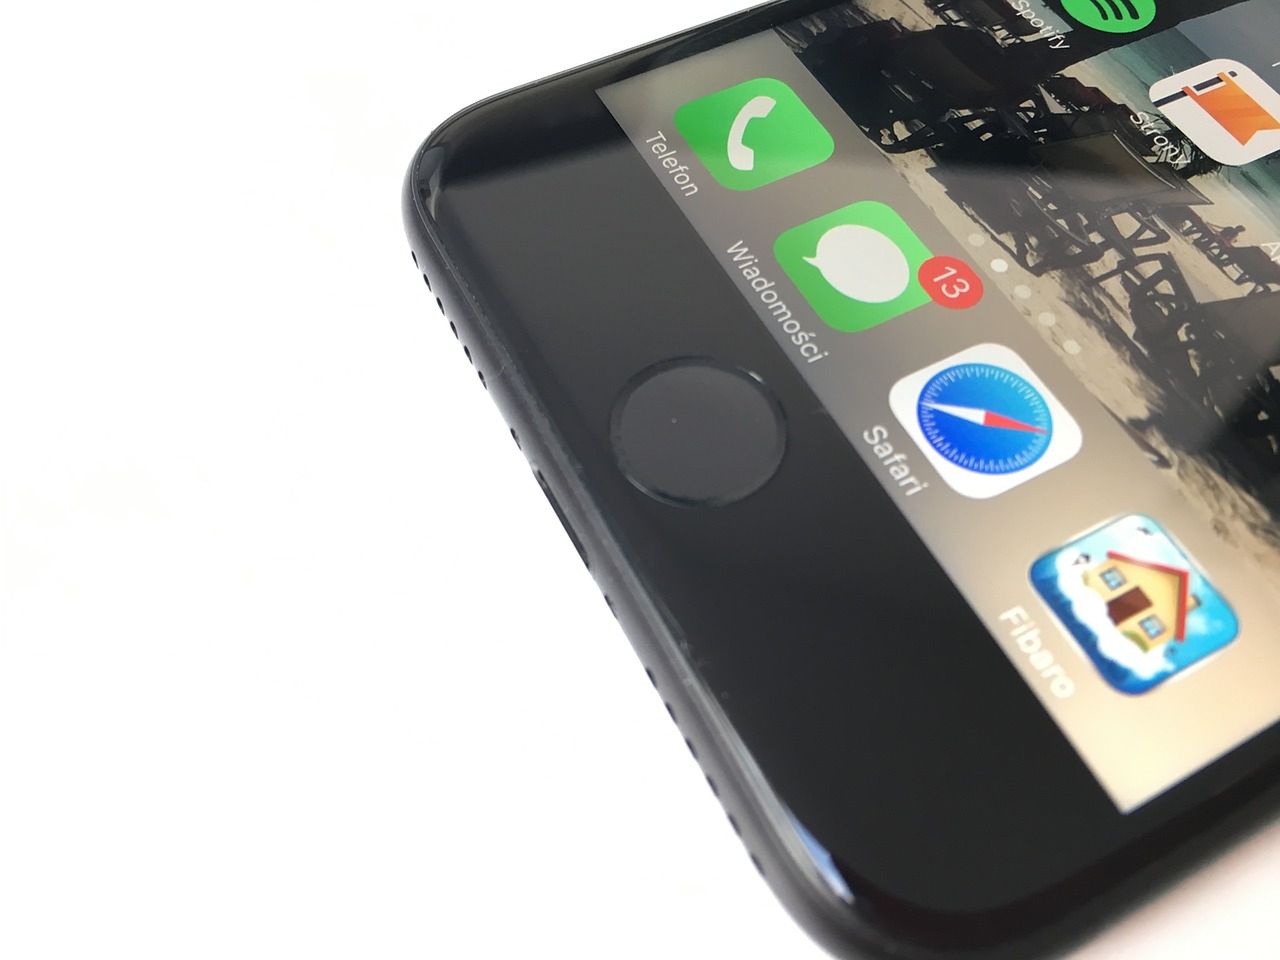 Wymiana przycisku domowego w iPhonie 7 wymaga wizyty w autoryzowanym serwisie Apple'a, by odpowiednio go zaprogramować